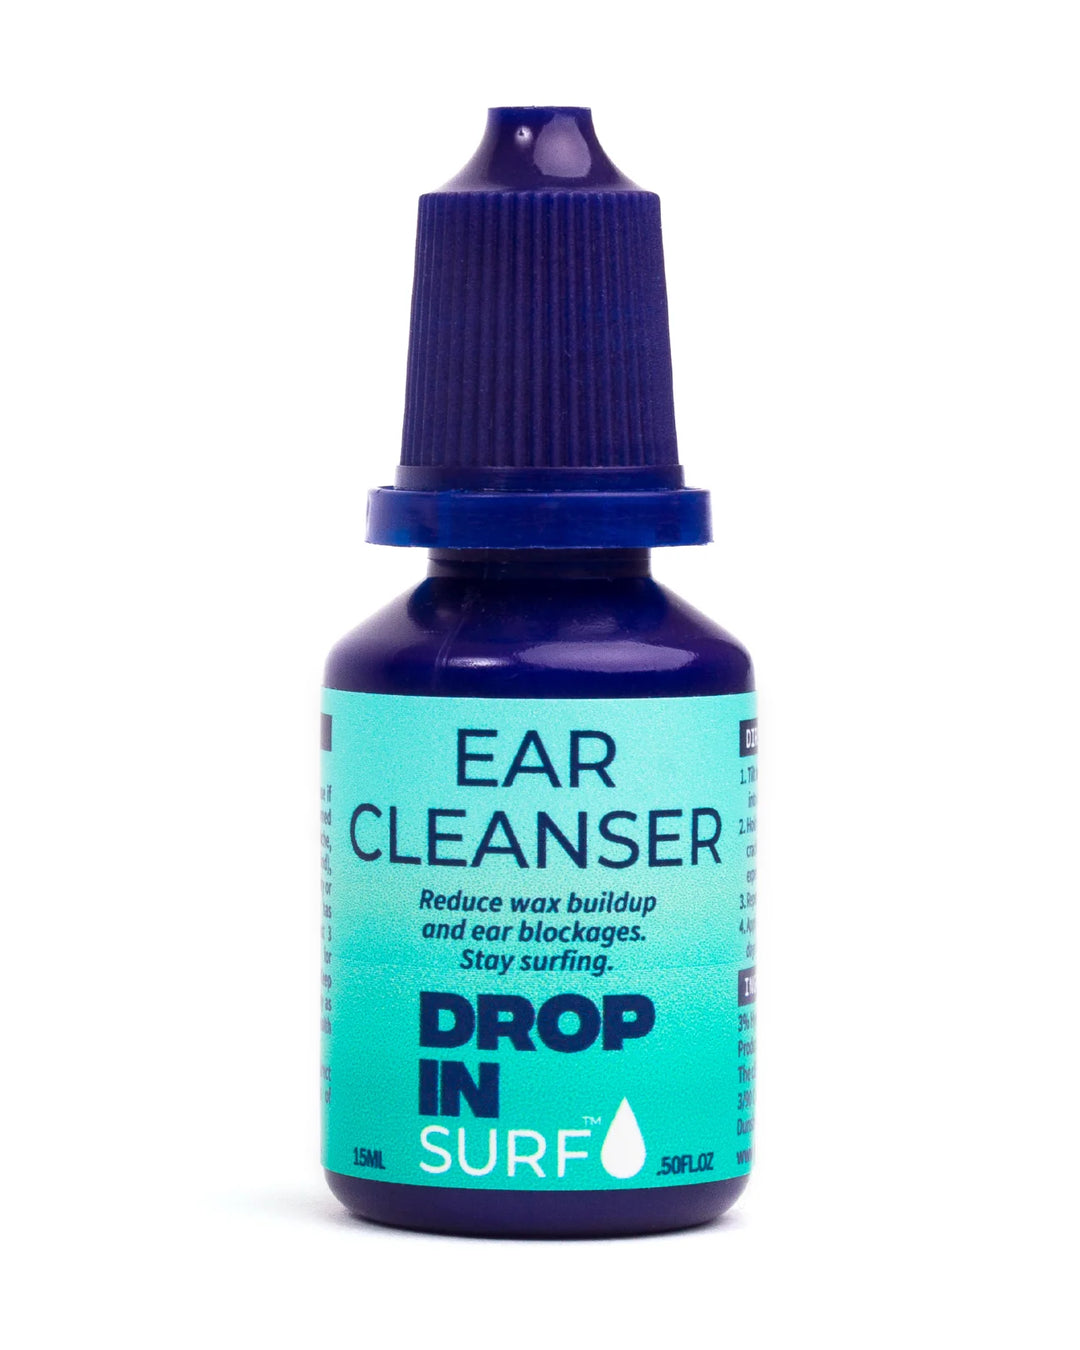 Drop In Surf: Ear Cleanser